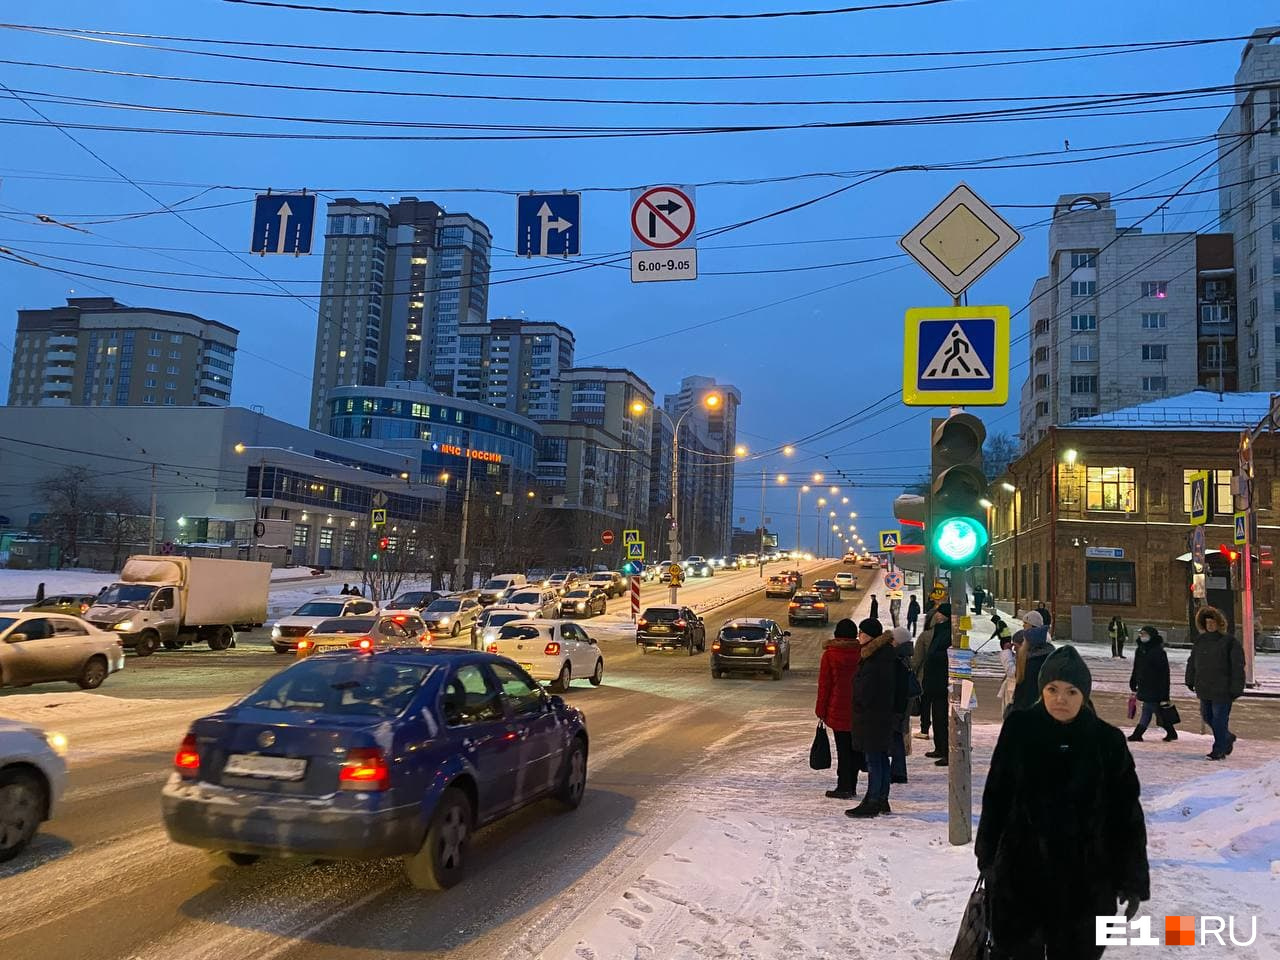 Если ехать по Московской, то видно знак, запрещающий поворот направо с шести до девяти часов